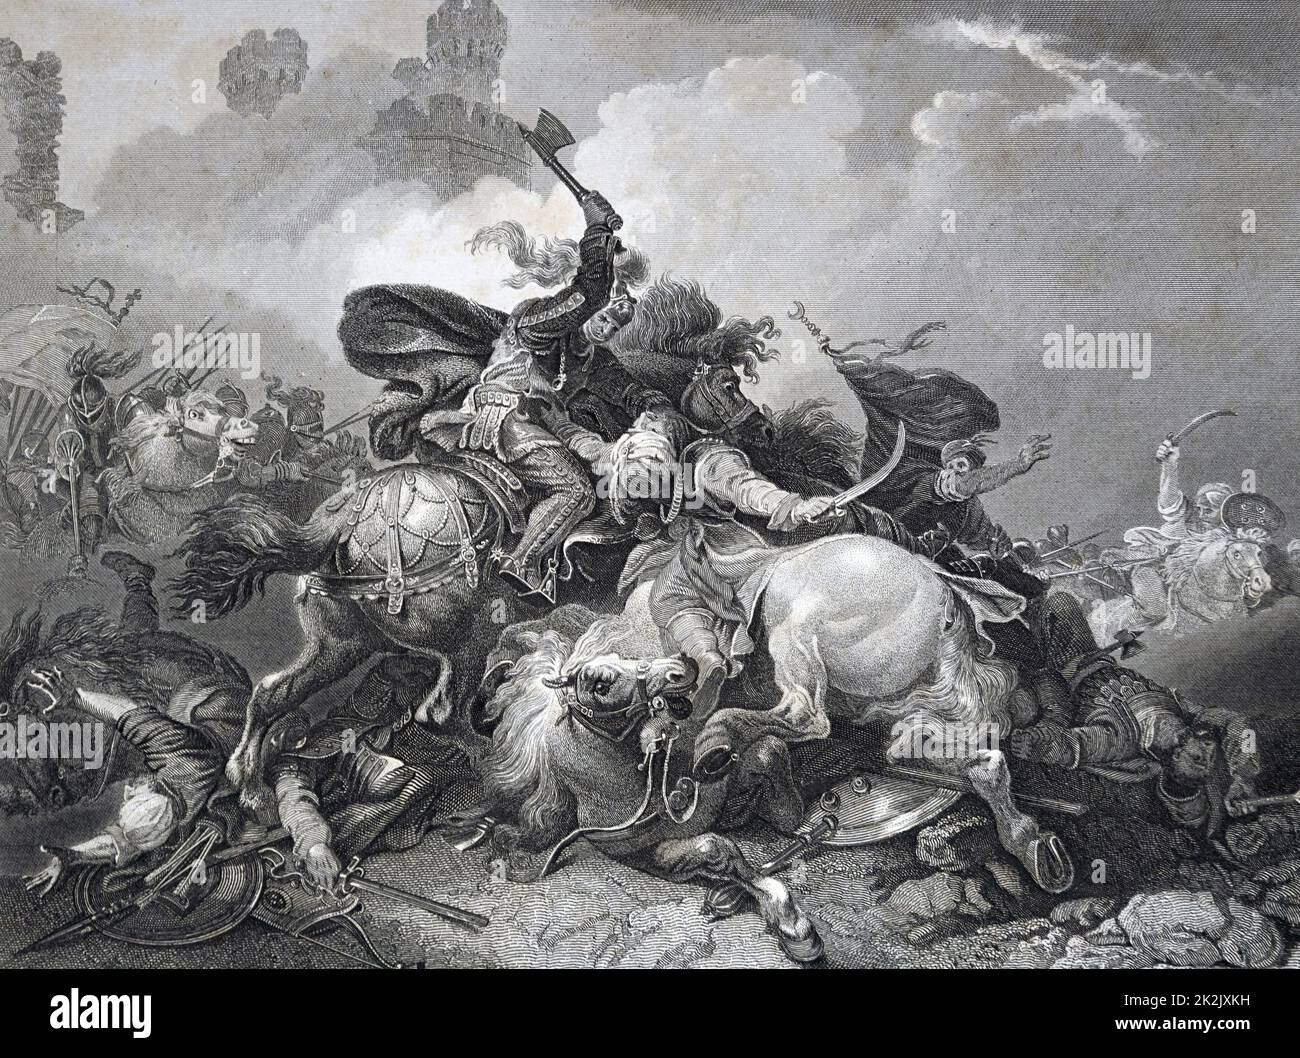 Gemälde der Darstellung König Richard I. (1157-1199) in Palästina während der Kreuzzug des Königs, ein Versuch, die europäischen Staats- und Regierungschefs, das Heilige Land zu erobern von Saladin. Vom 12. Jahrhundert Stockfoto